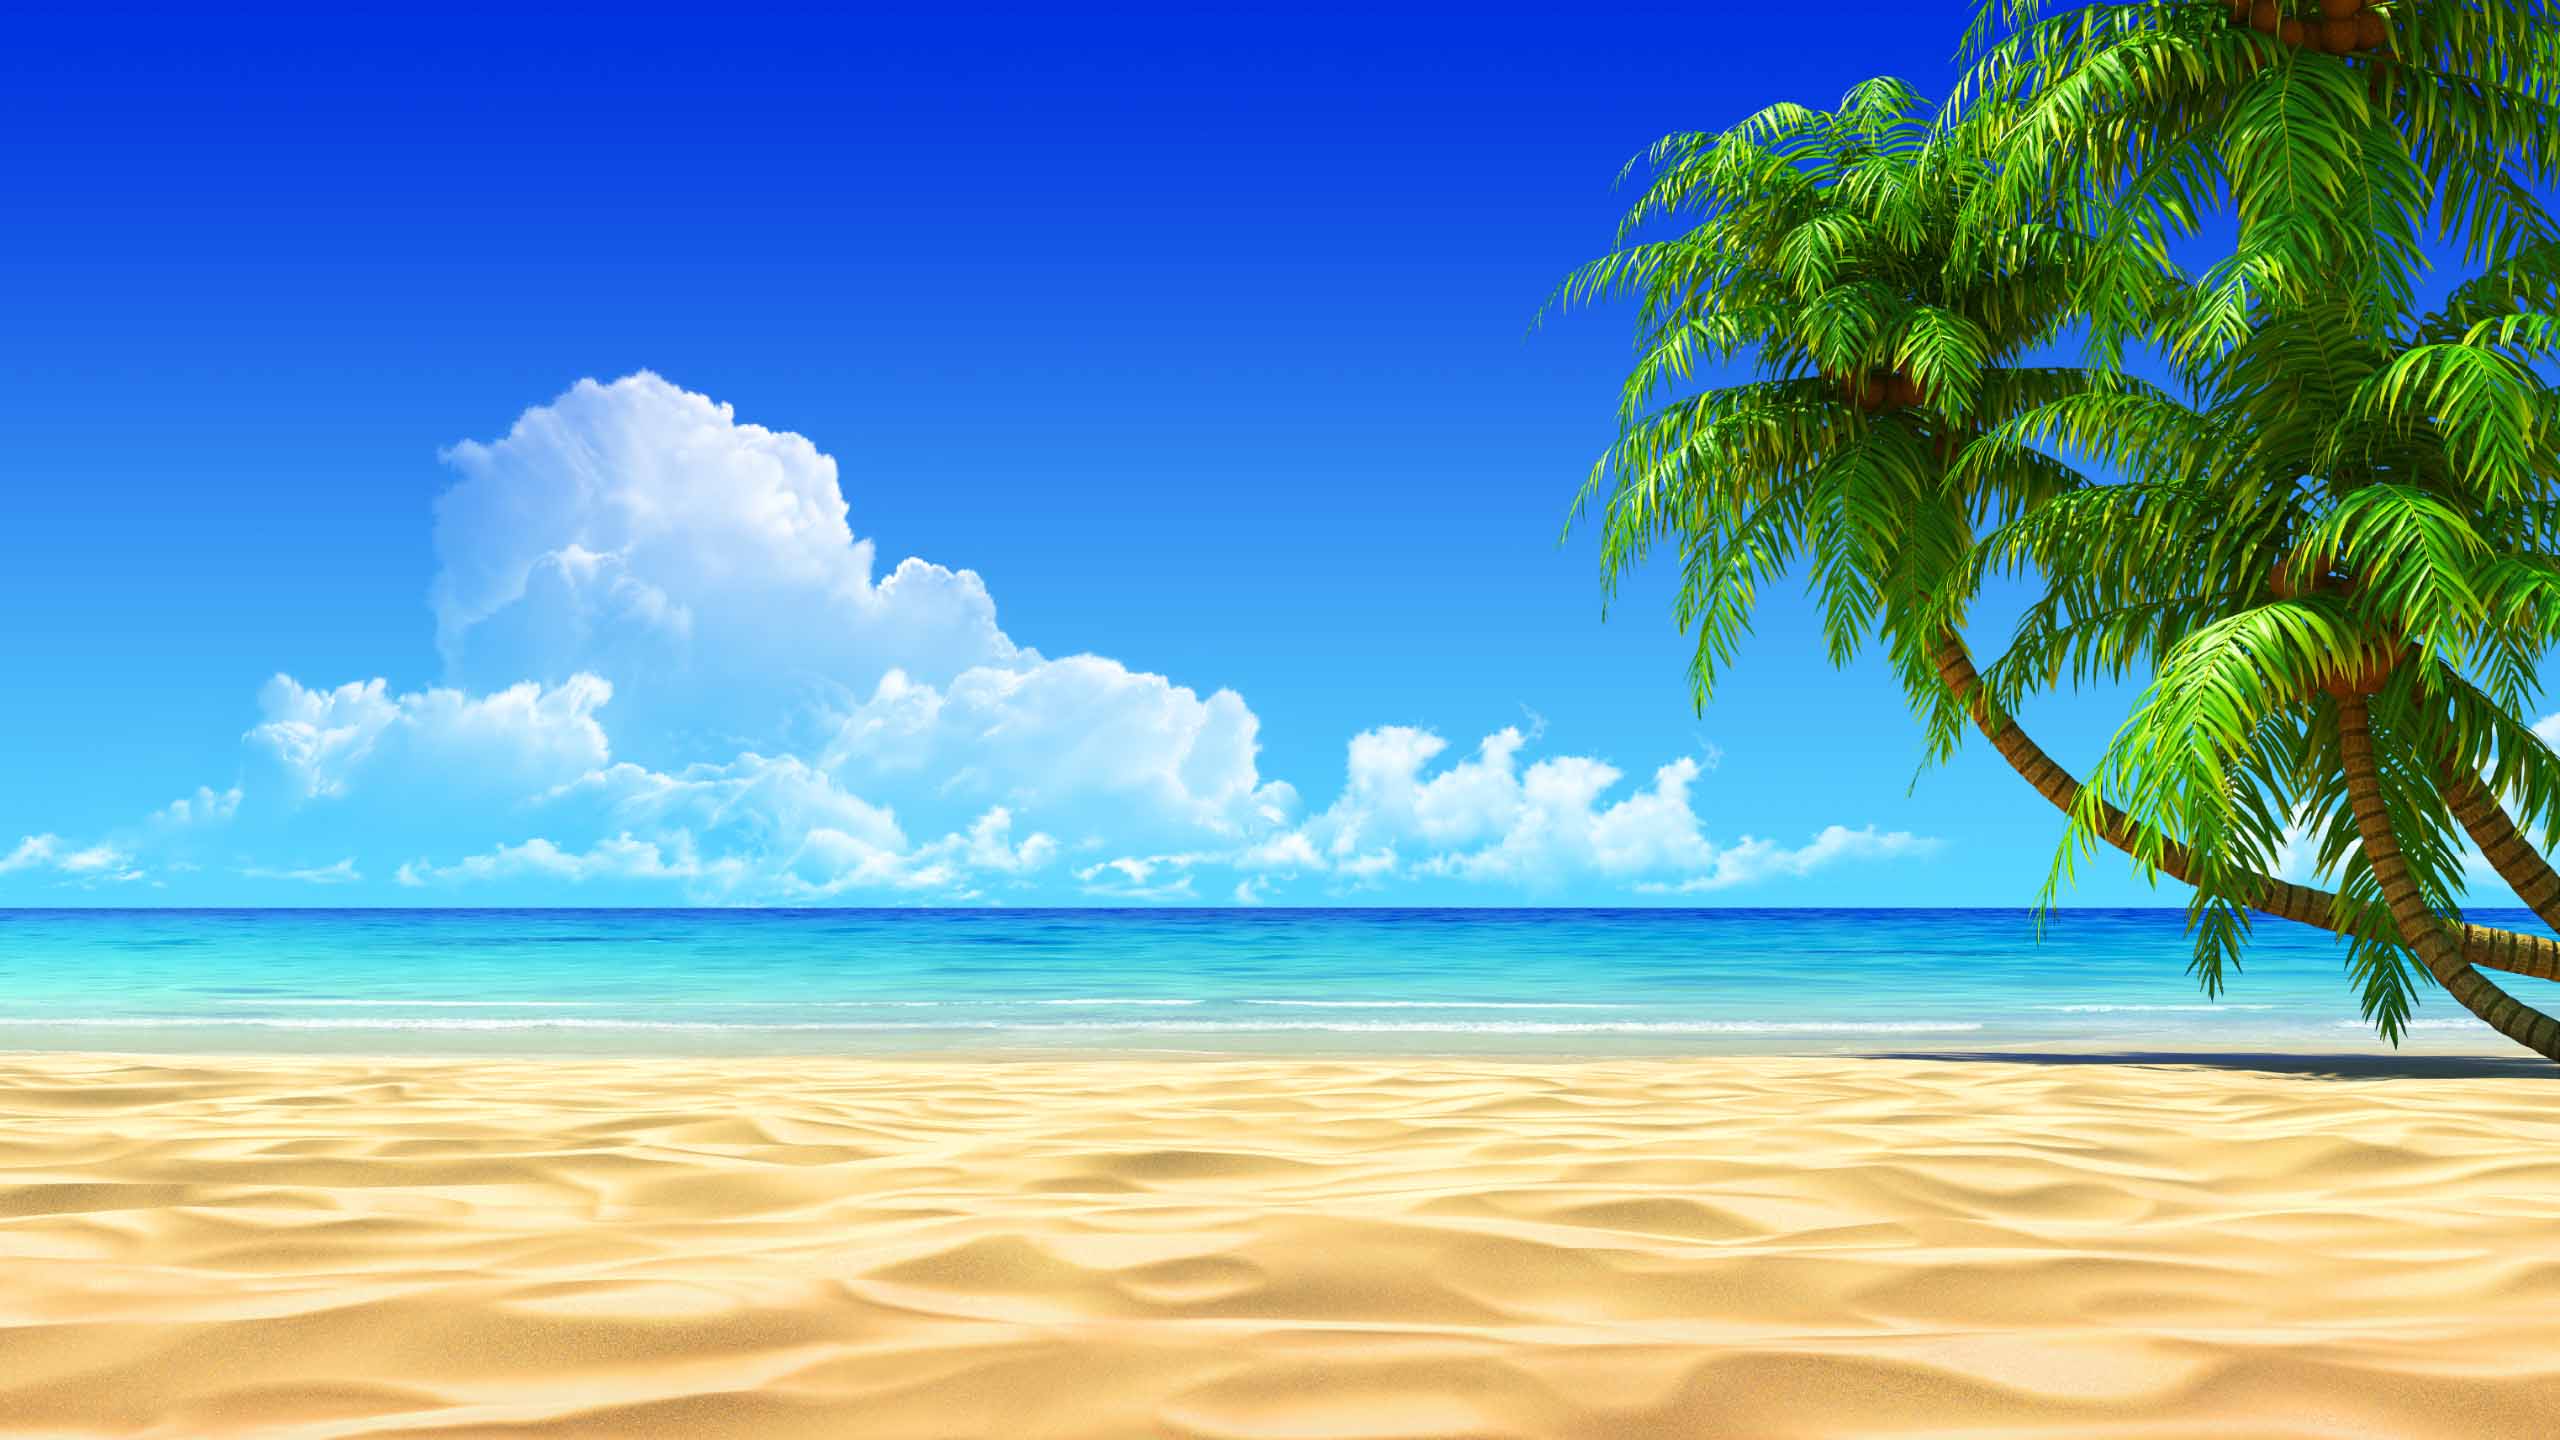 beach tropical photo wallpaper